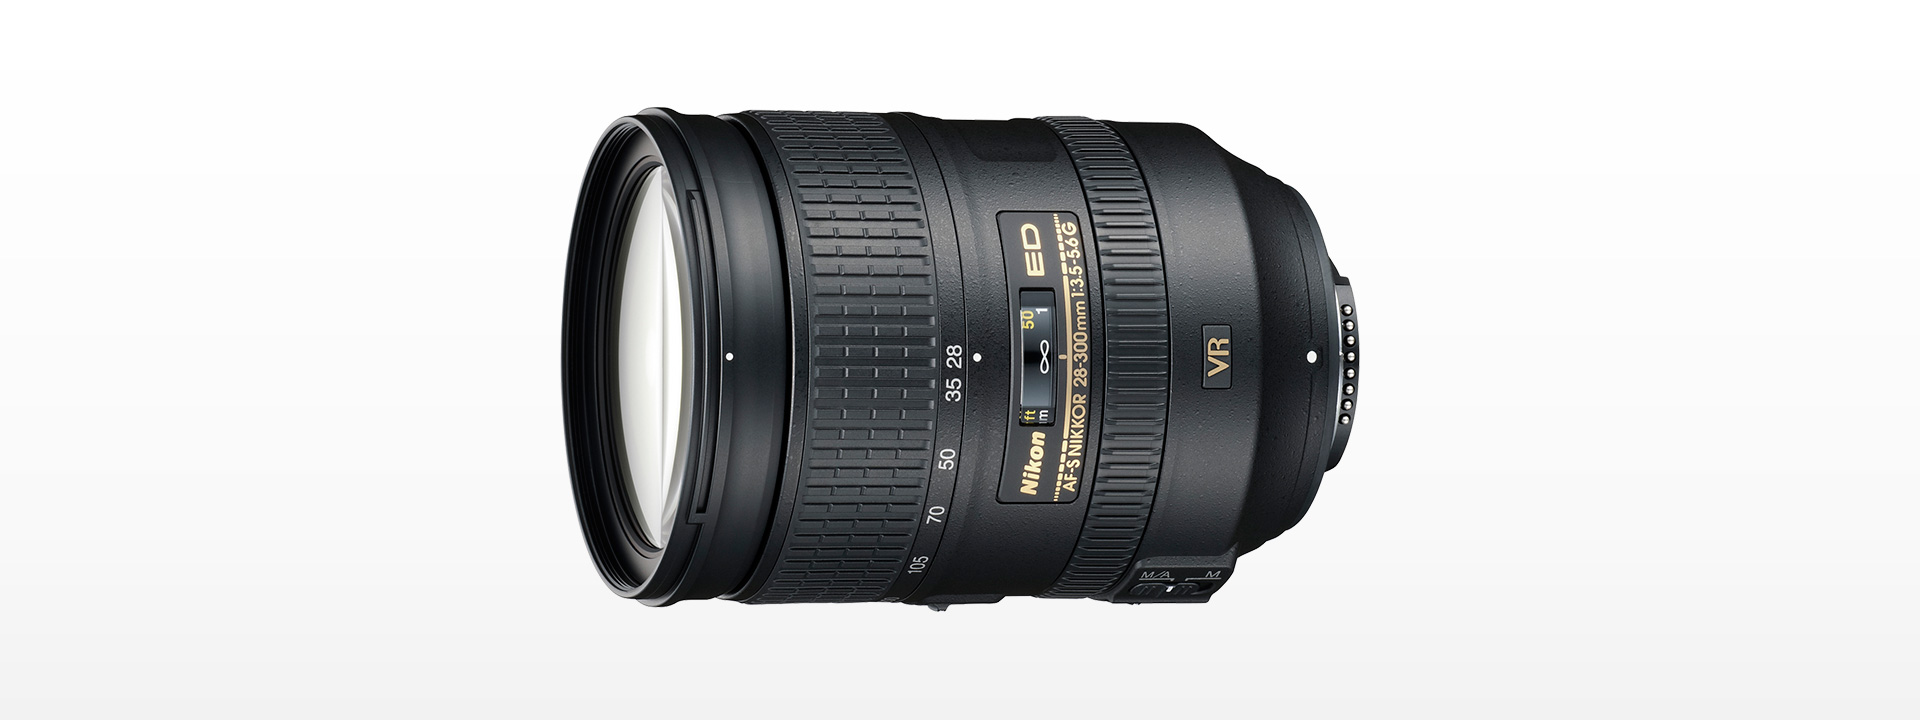 Nikon ニコン AF-S 28-300mm F3.5-5.6 VR 超望遠